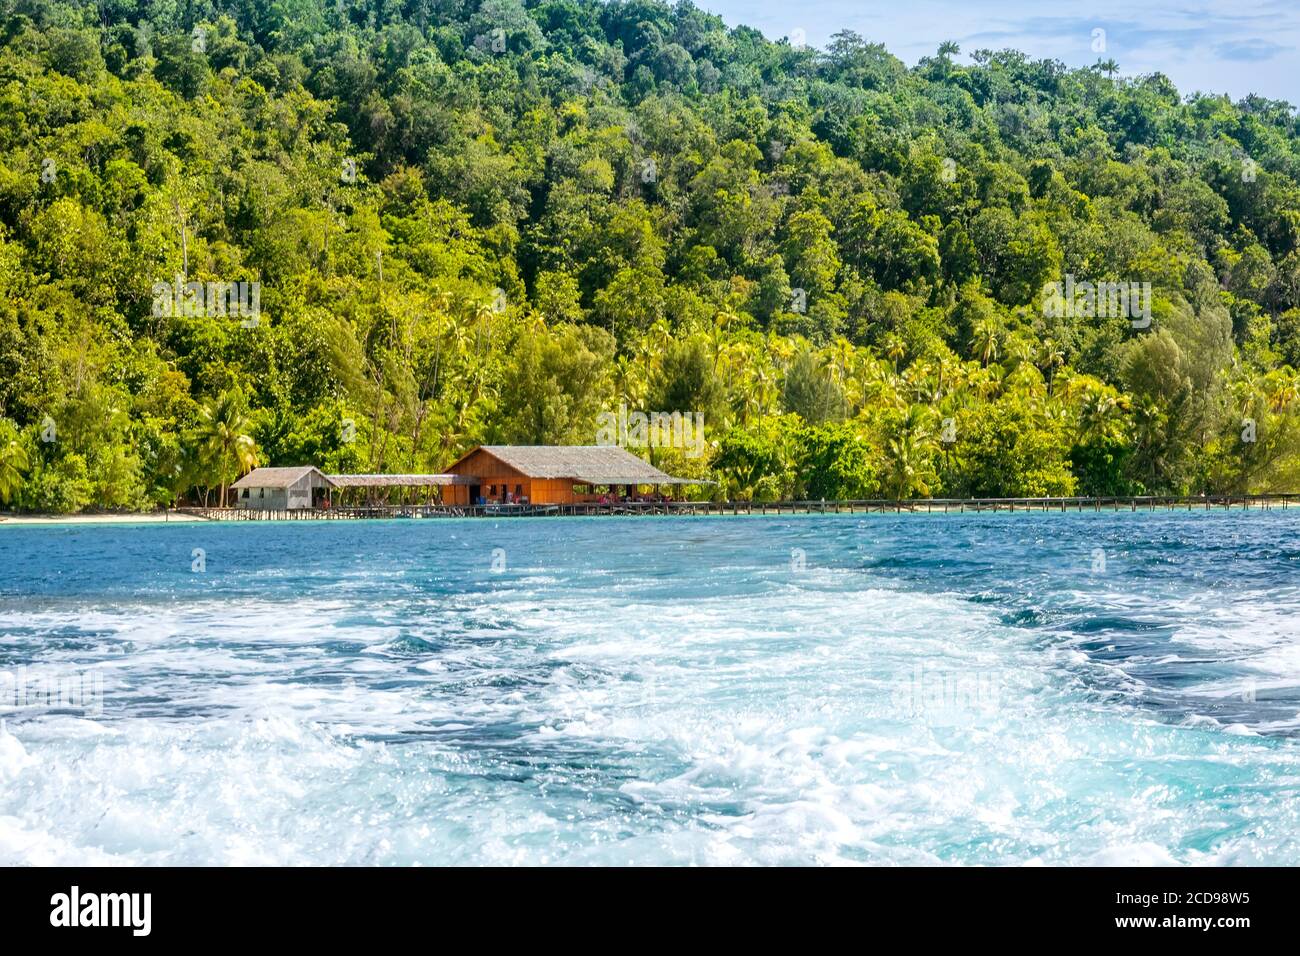 Isla tropical en Indonesia. Muelle de madera y cabaña en la orilla. Espuma de agua detrás de la popa del yate Foto de stock